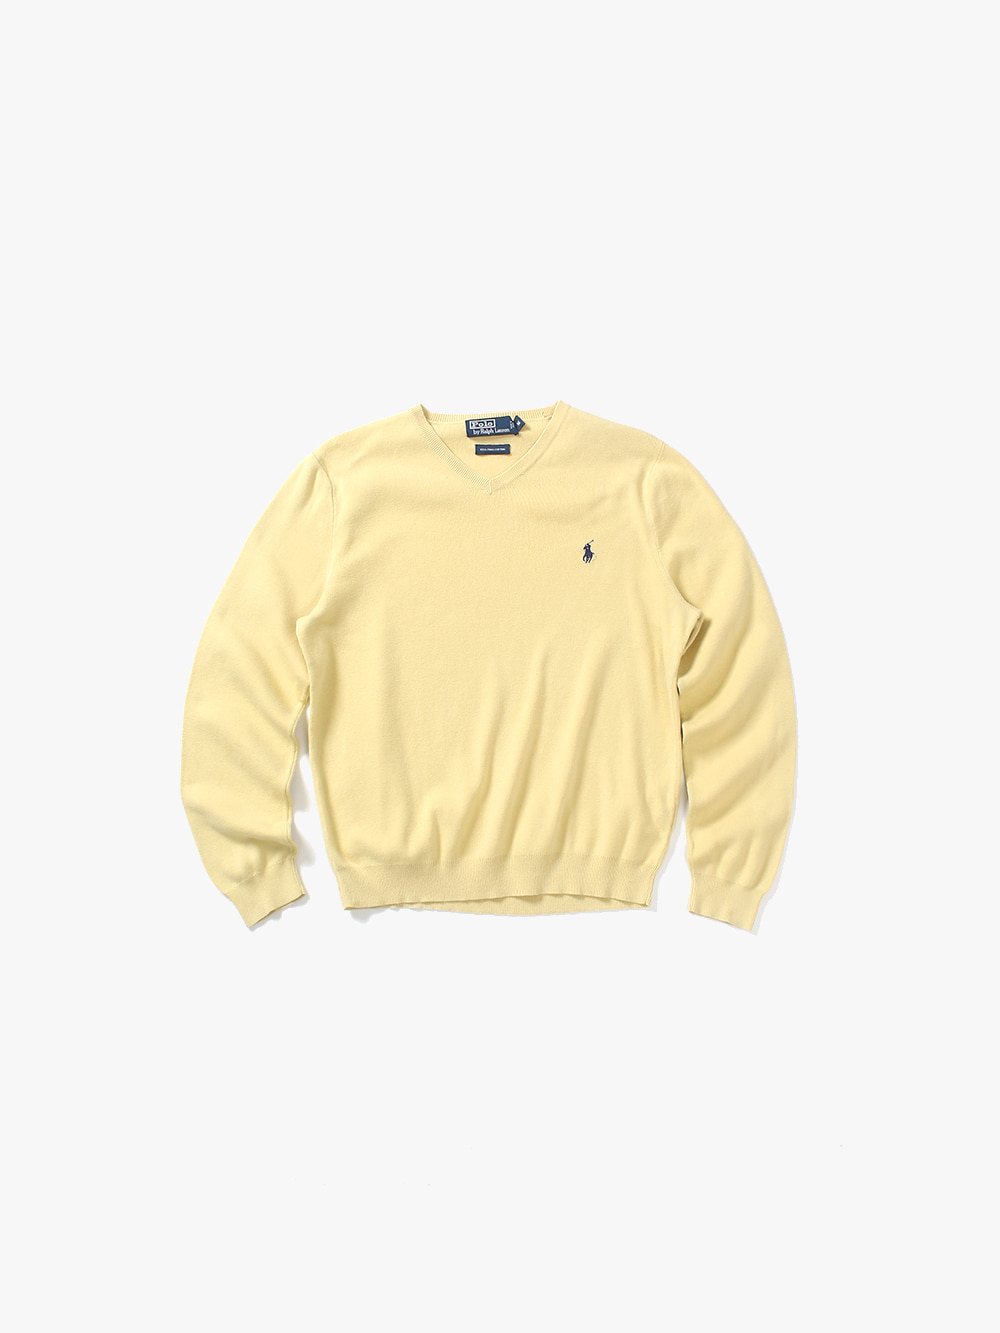 [ M ] Polo Ralph Lauren Sweater (6278)